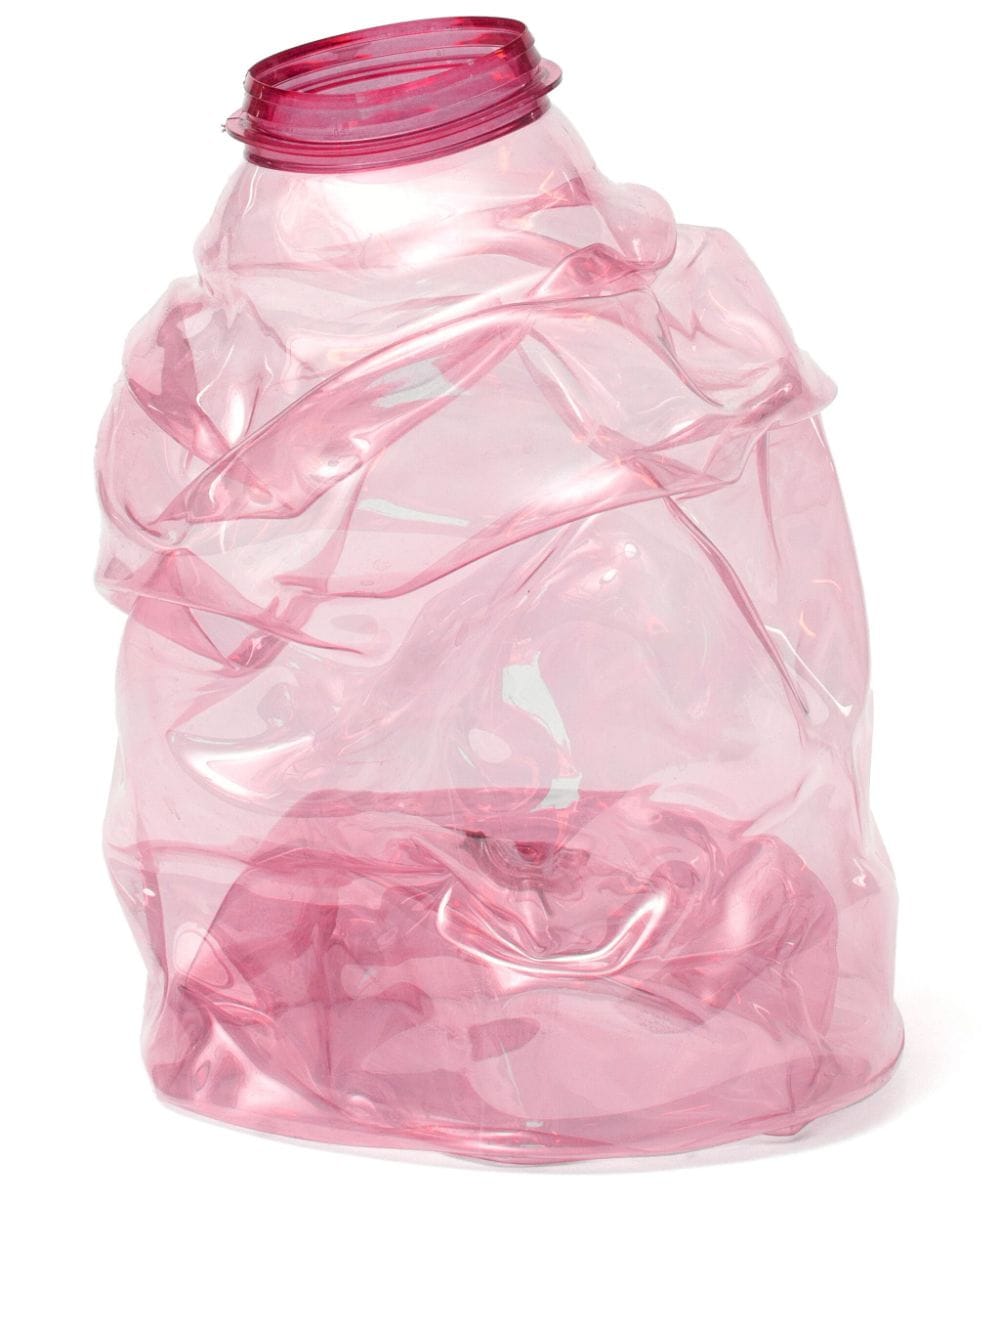 NIKO JUNE medium Eros Torso vase (30cm) - Pink von NIKO JUNE